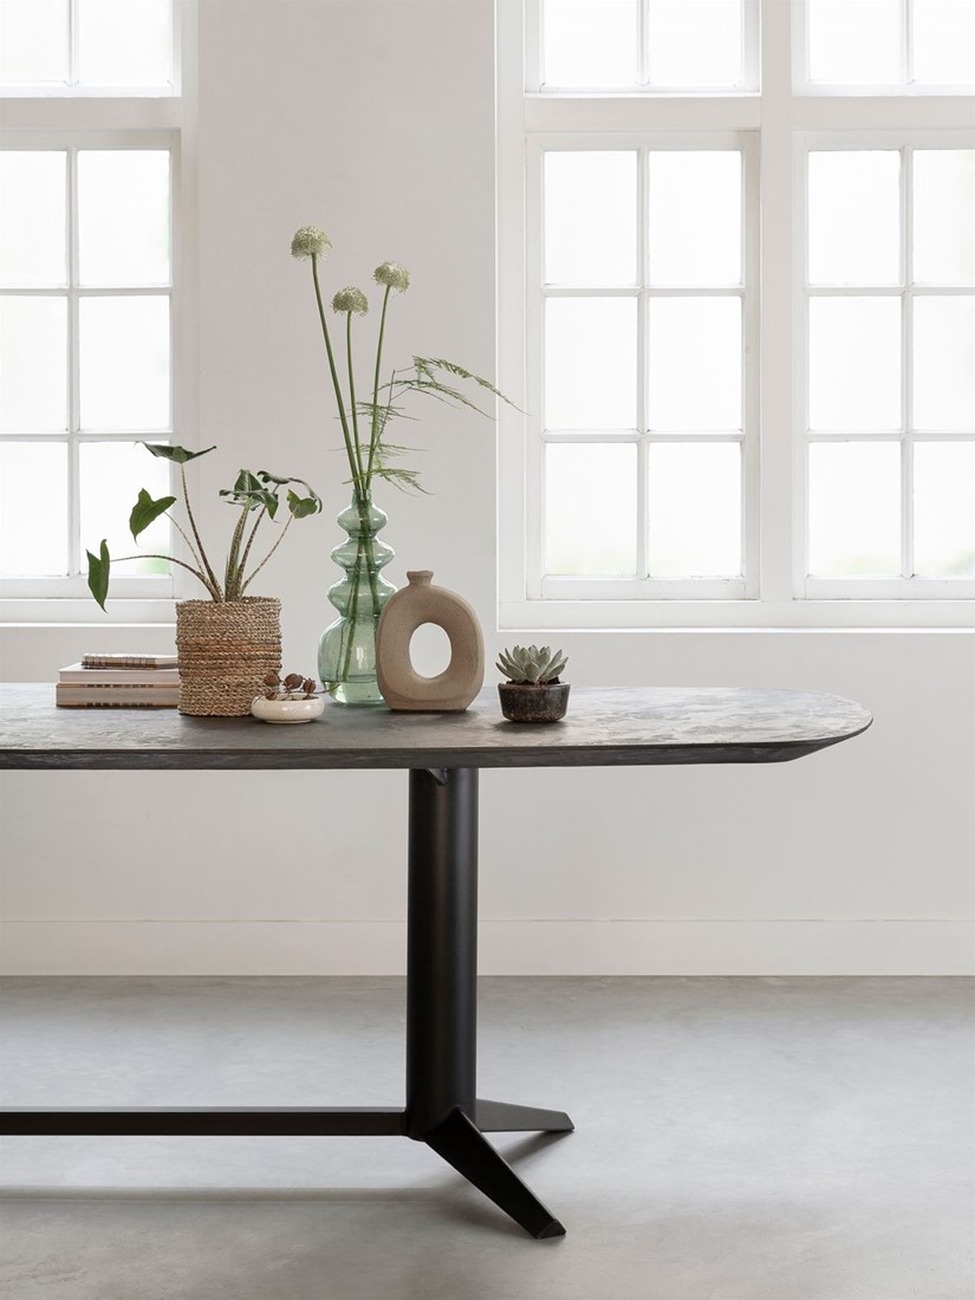 Der Esstisch Soho überzeugt mit seinem modernen Design. Gefertigt wurde es aus recyceltem Teakholz, welches einen schwarzen Farbton besitzt. Das Gestell ist aus Metall und hat eine schwarze Farbe. Der Esstisch besitzt eine Breite von 210 cm.